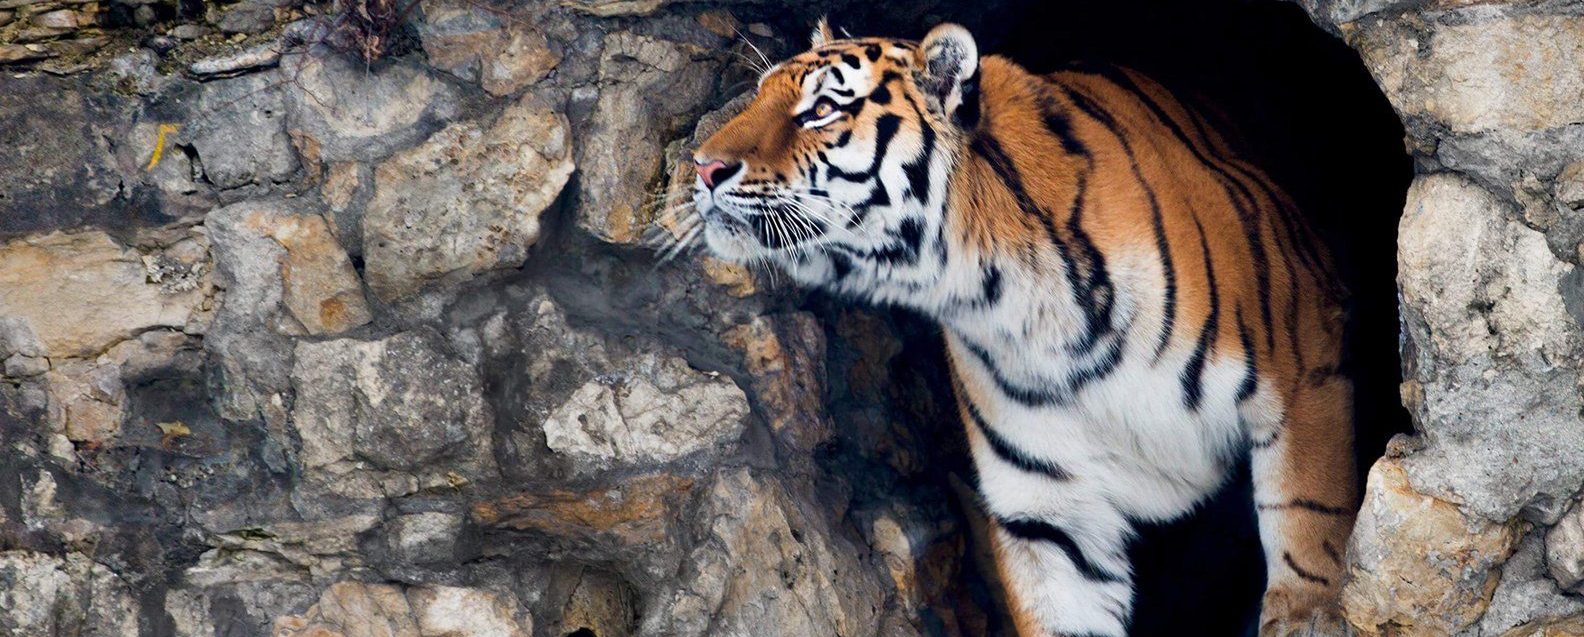 День тигра отпразднуют в Московском зоопарке. Фото: сайт мэра Москвы